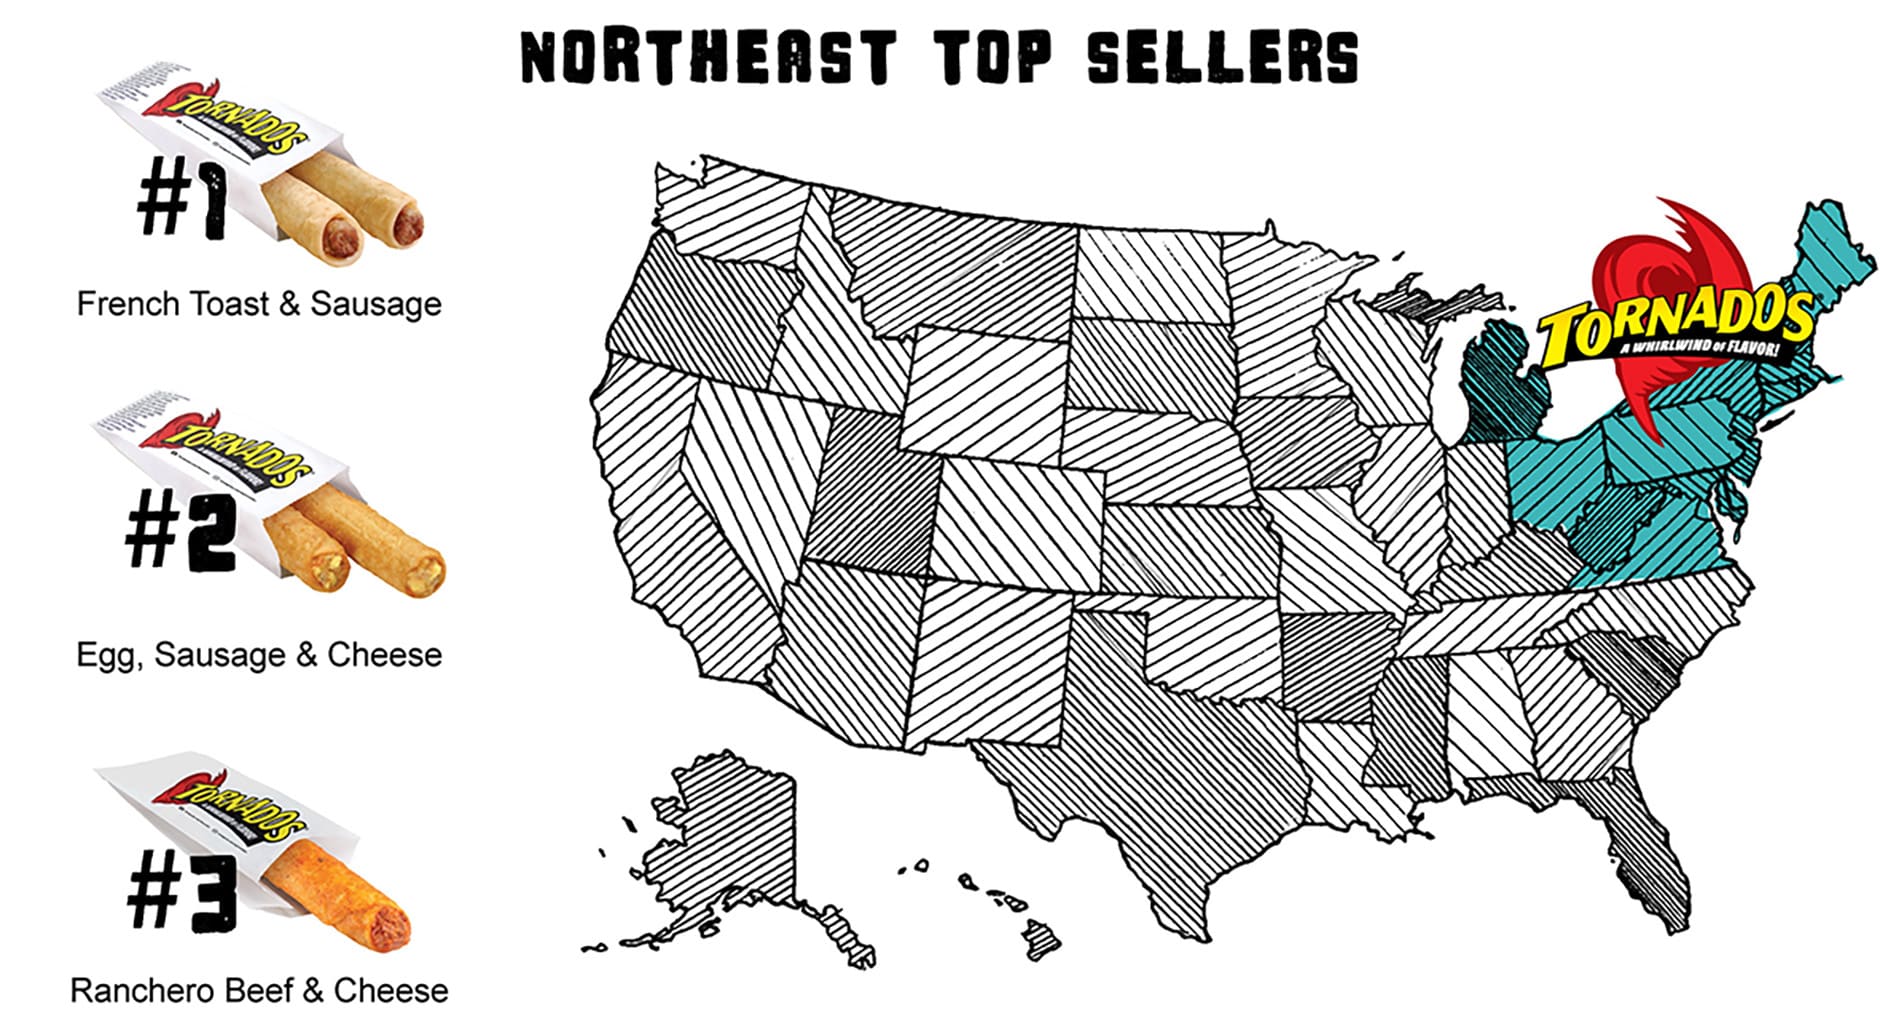 Northeast Top Sellers